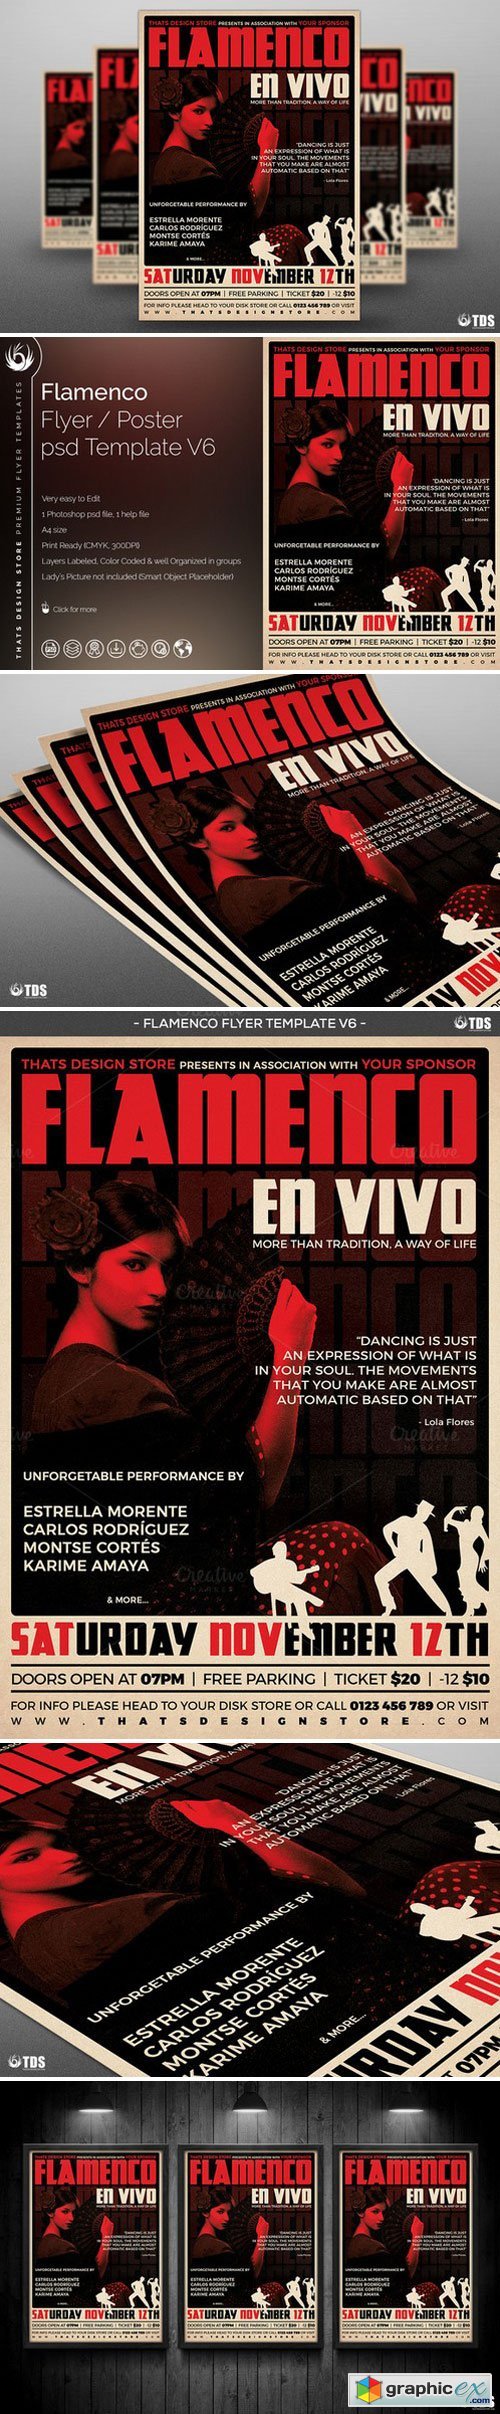 Flamenco Flyer Template V6